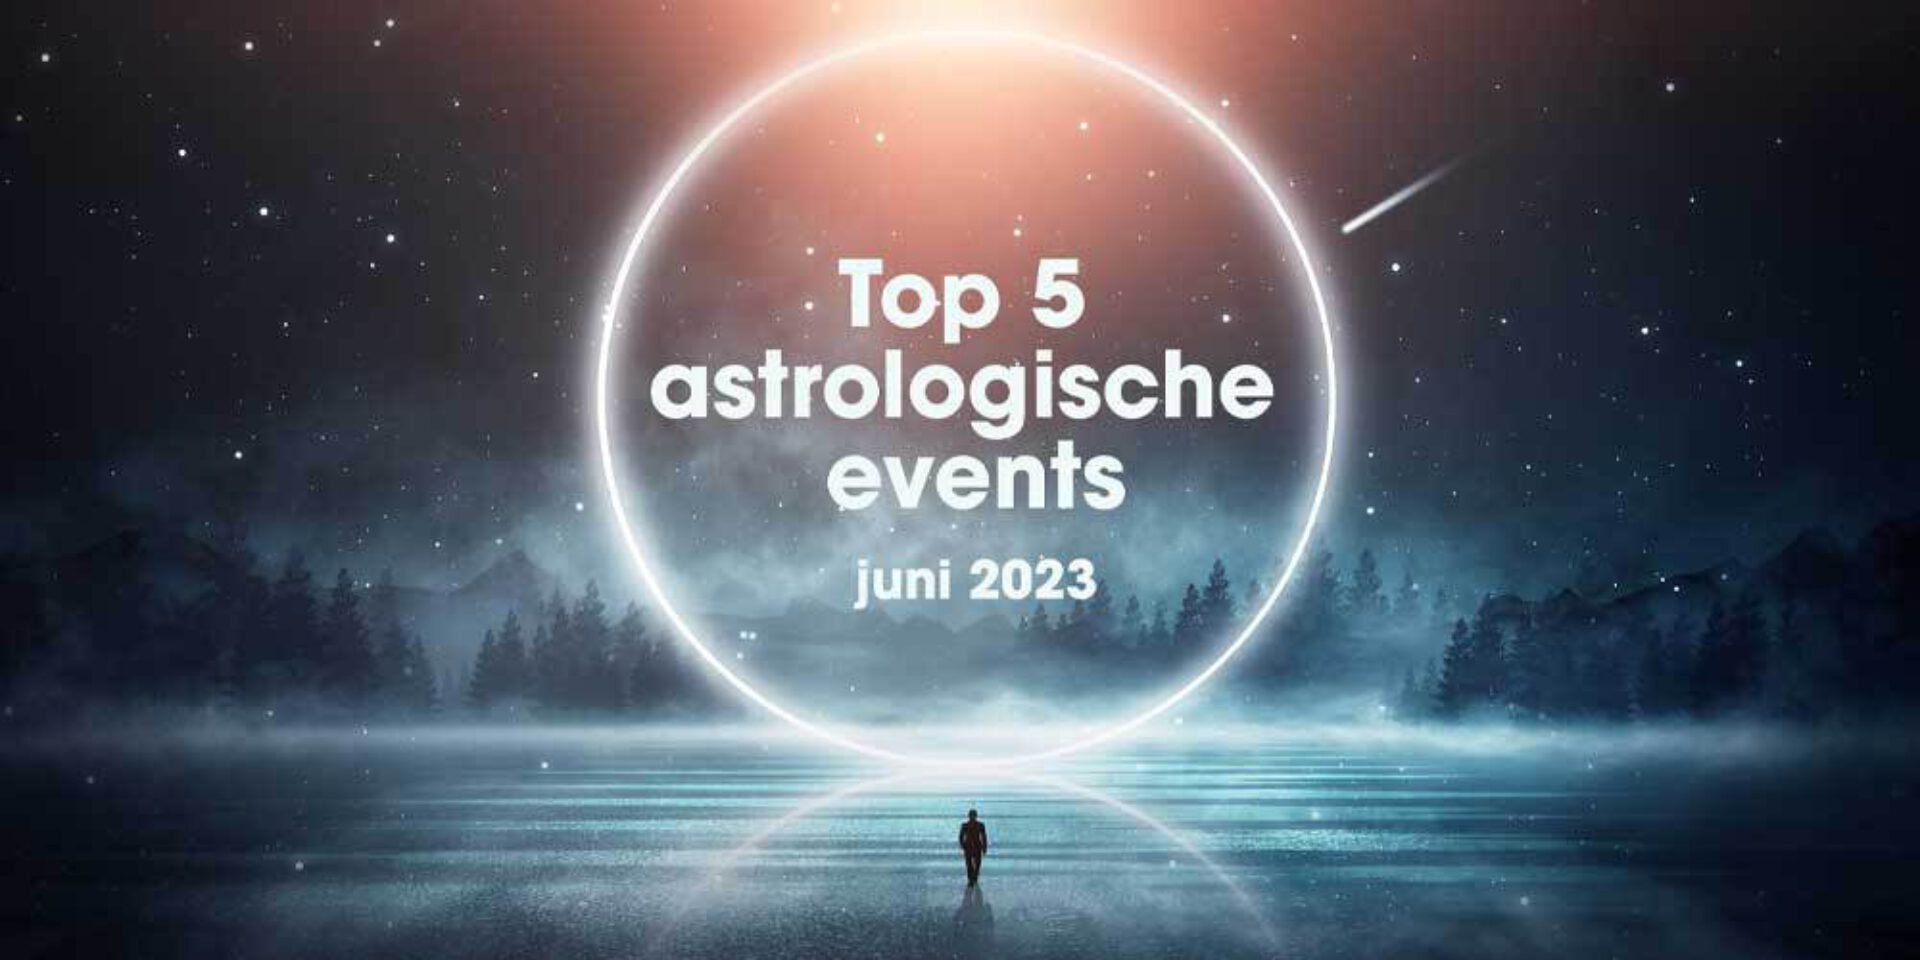 De top 5 astrologische gebeurtenissen in juni 2023